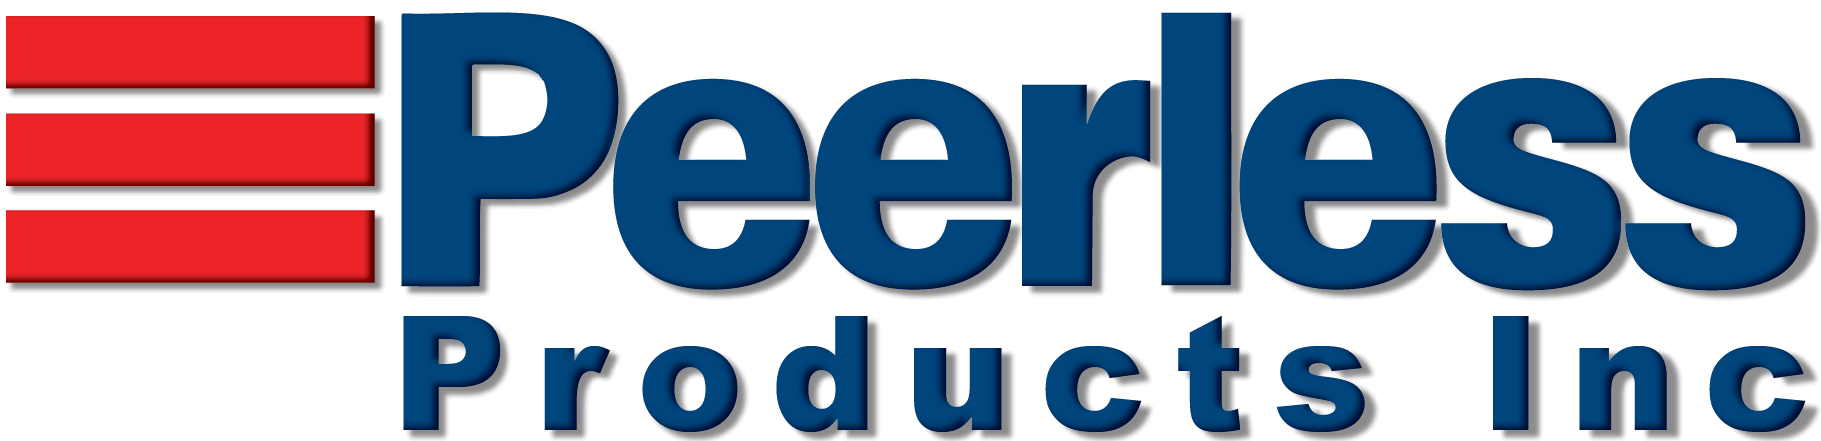 Peerless company logo